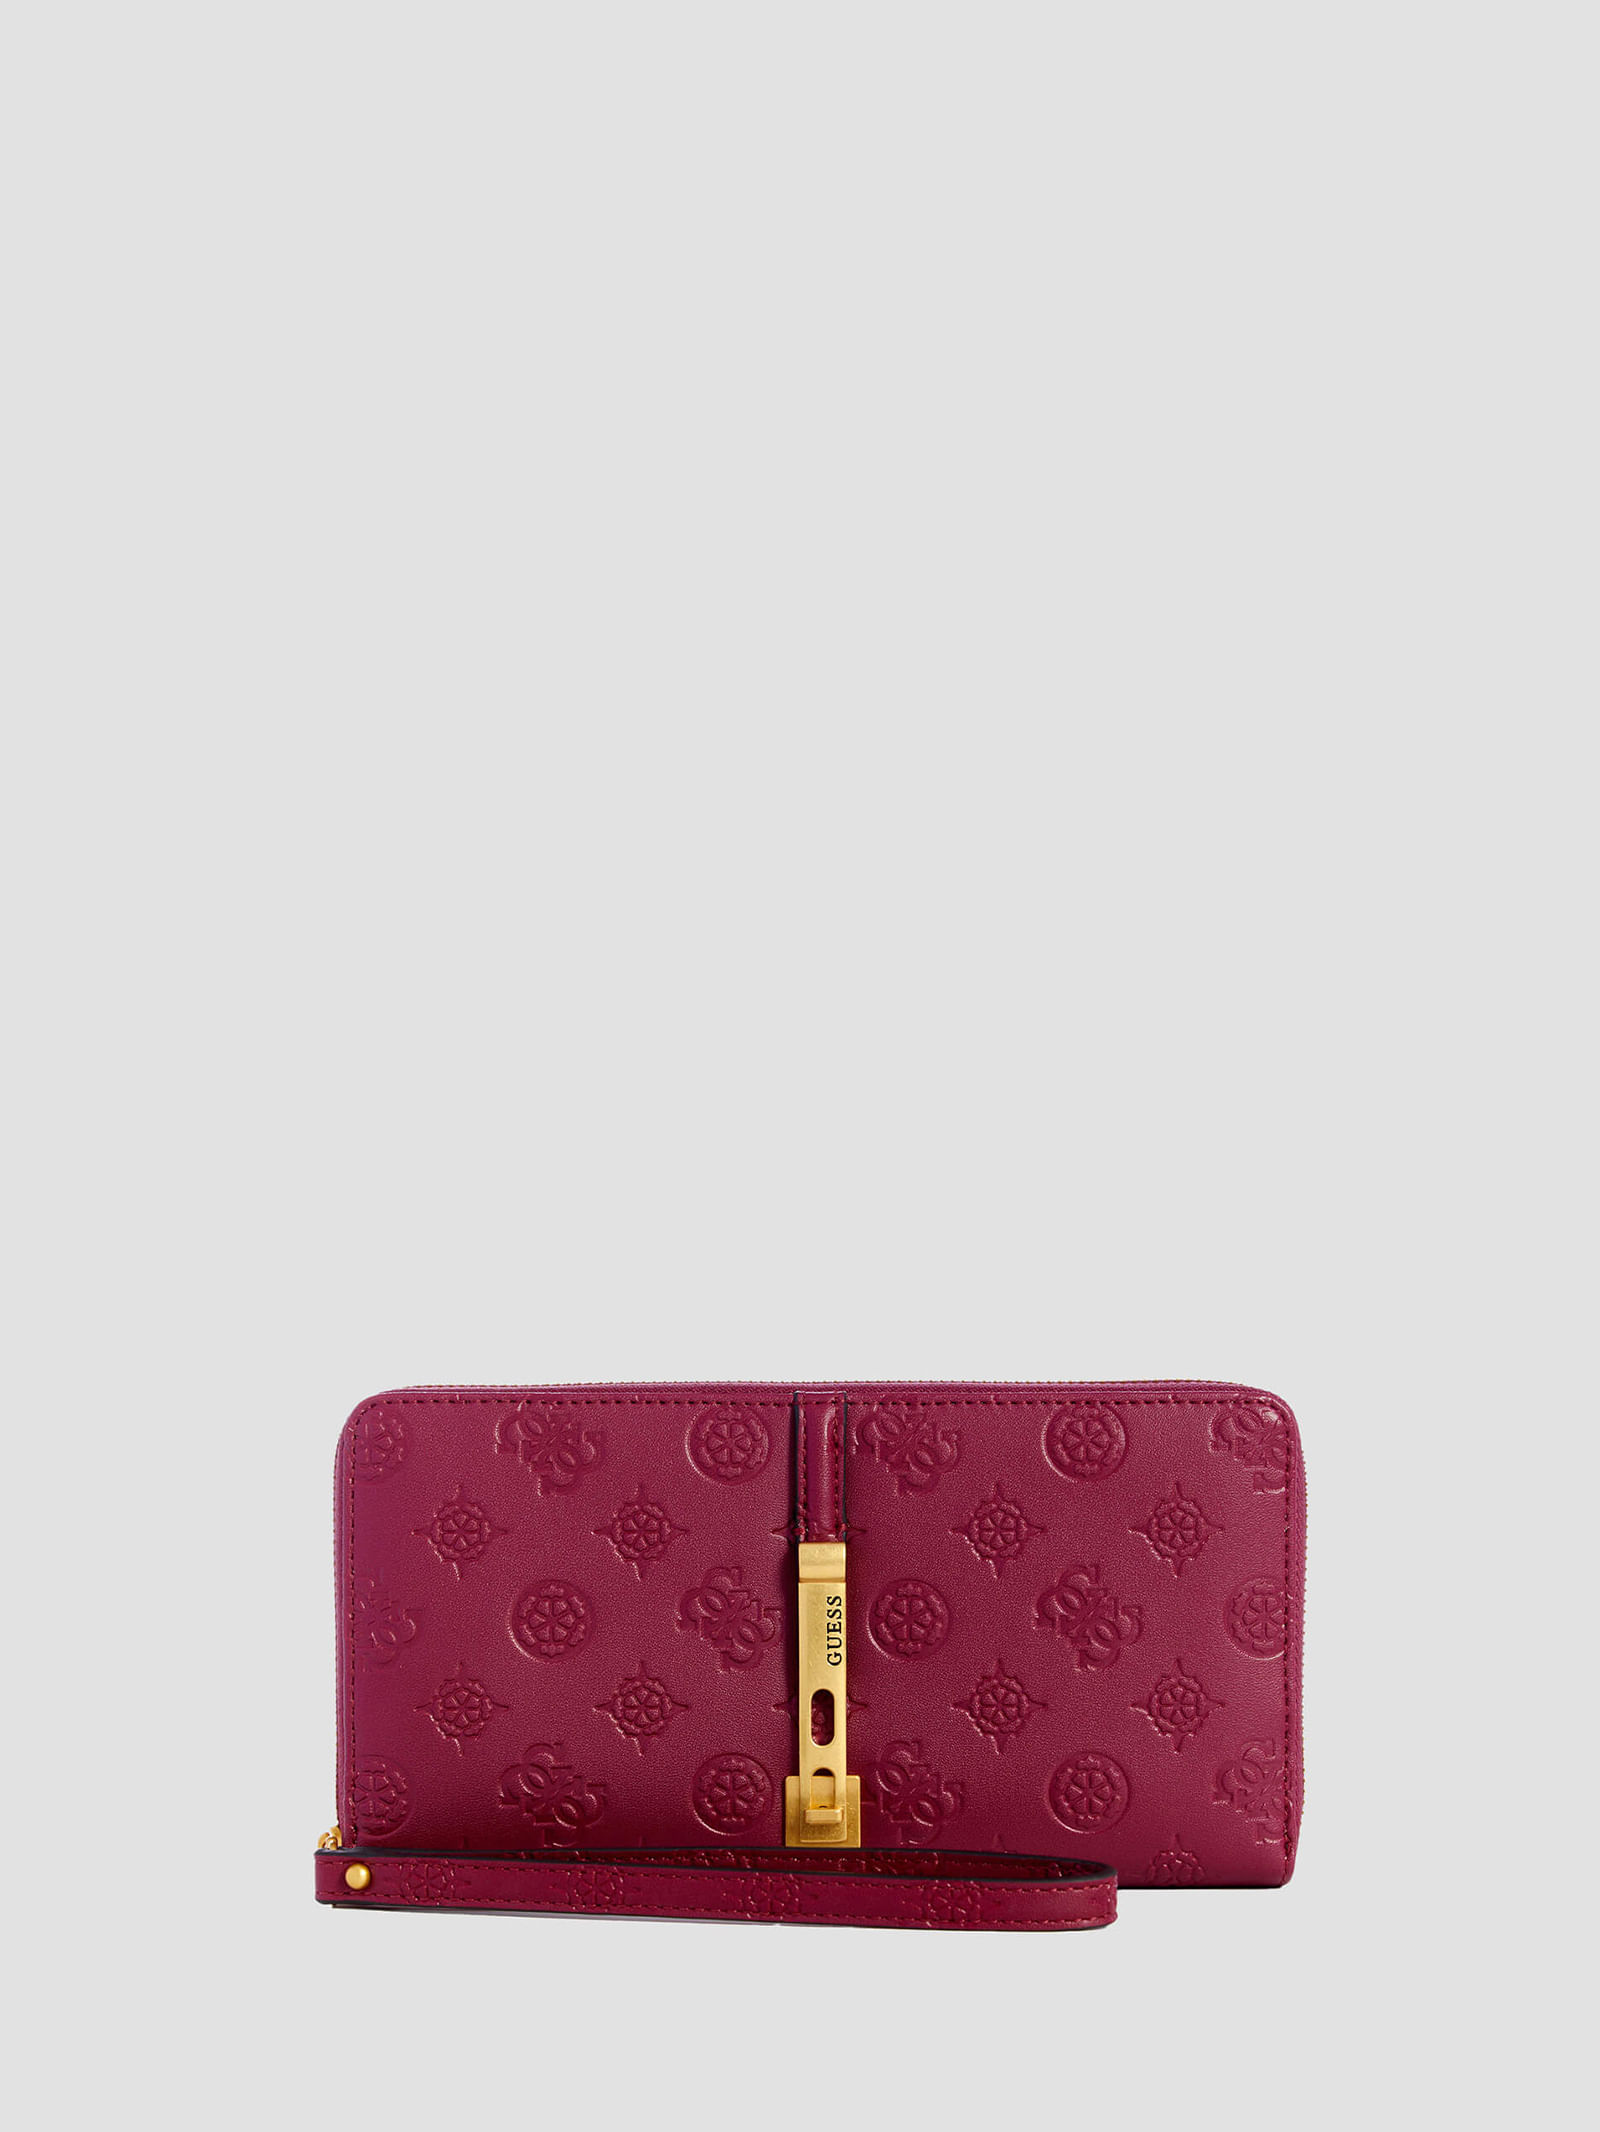 Las mejores ofertas en Carteras billetera tarjeta Louis Vuitton para Mujeres